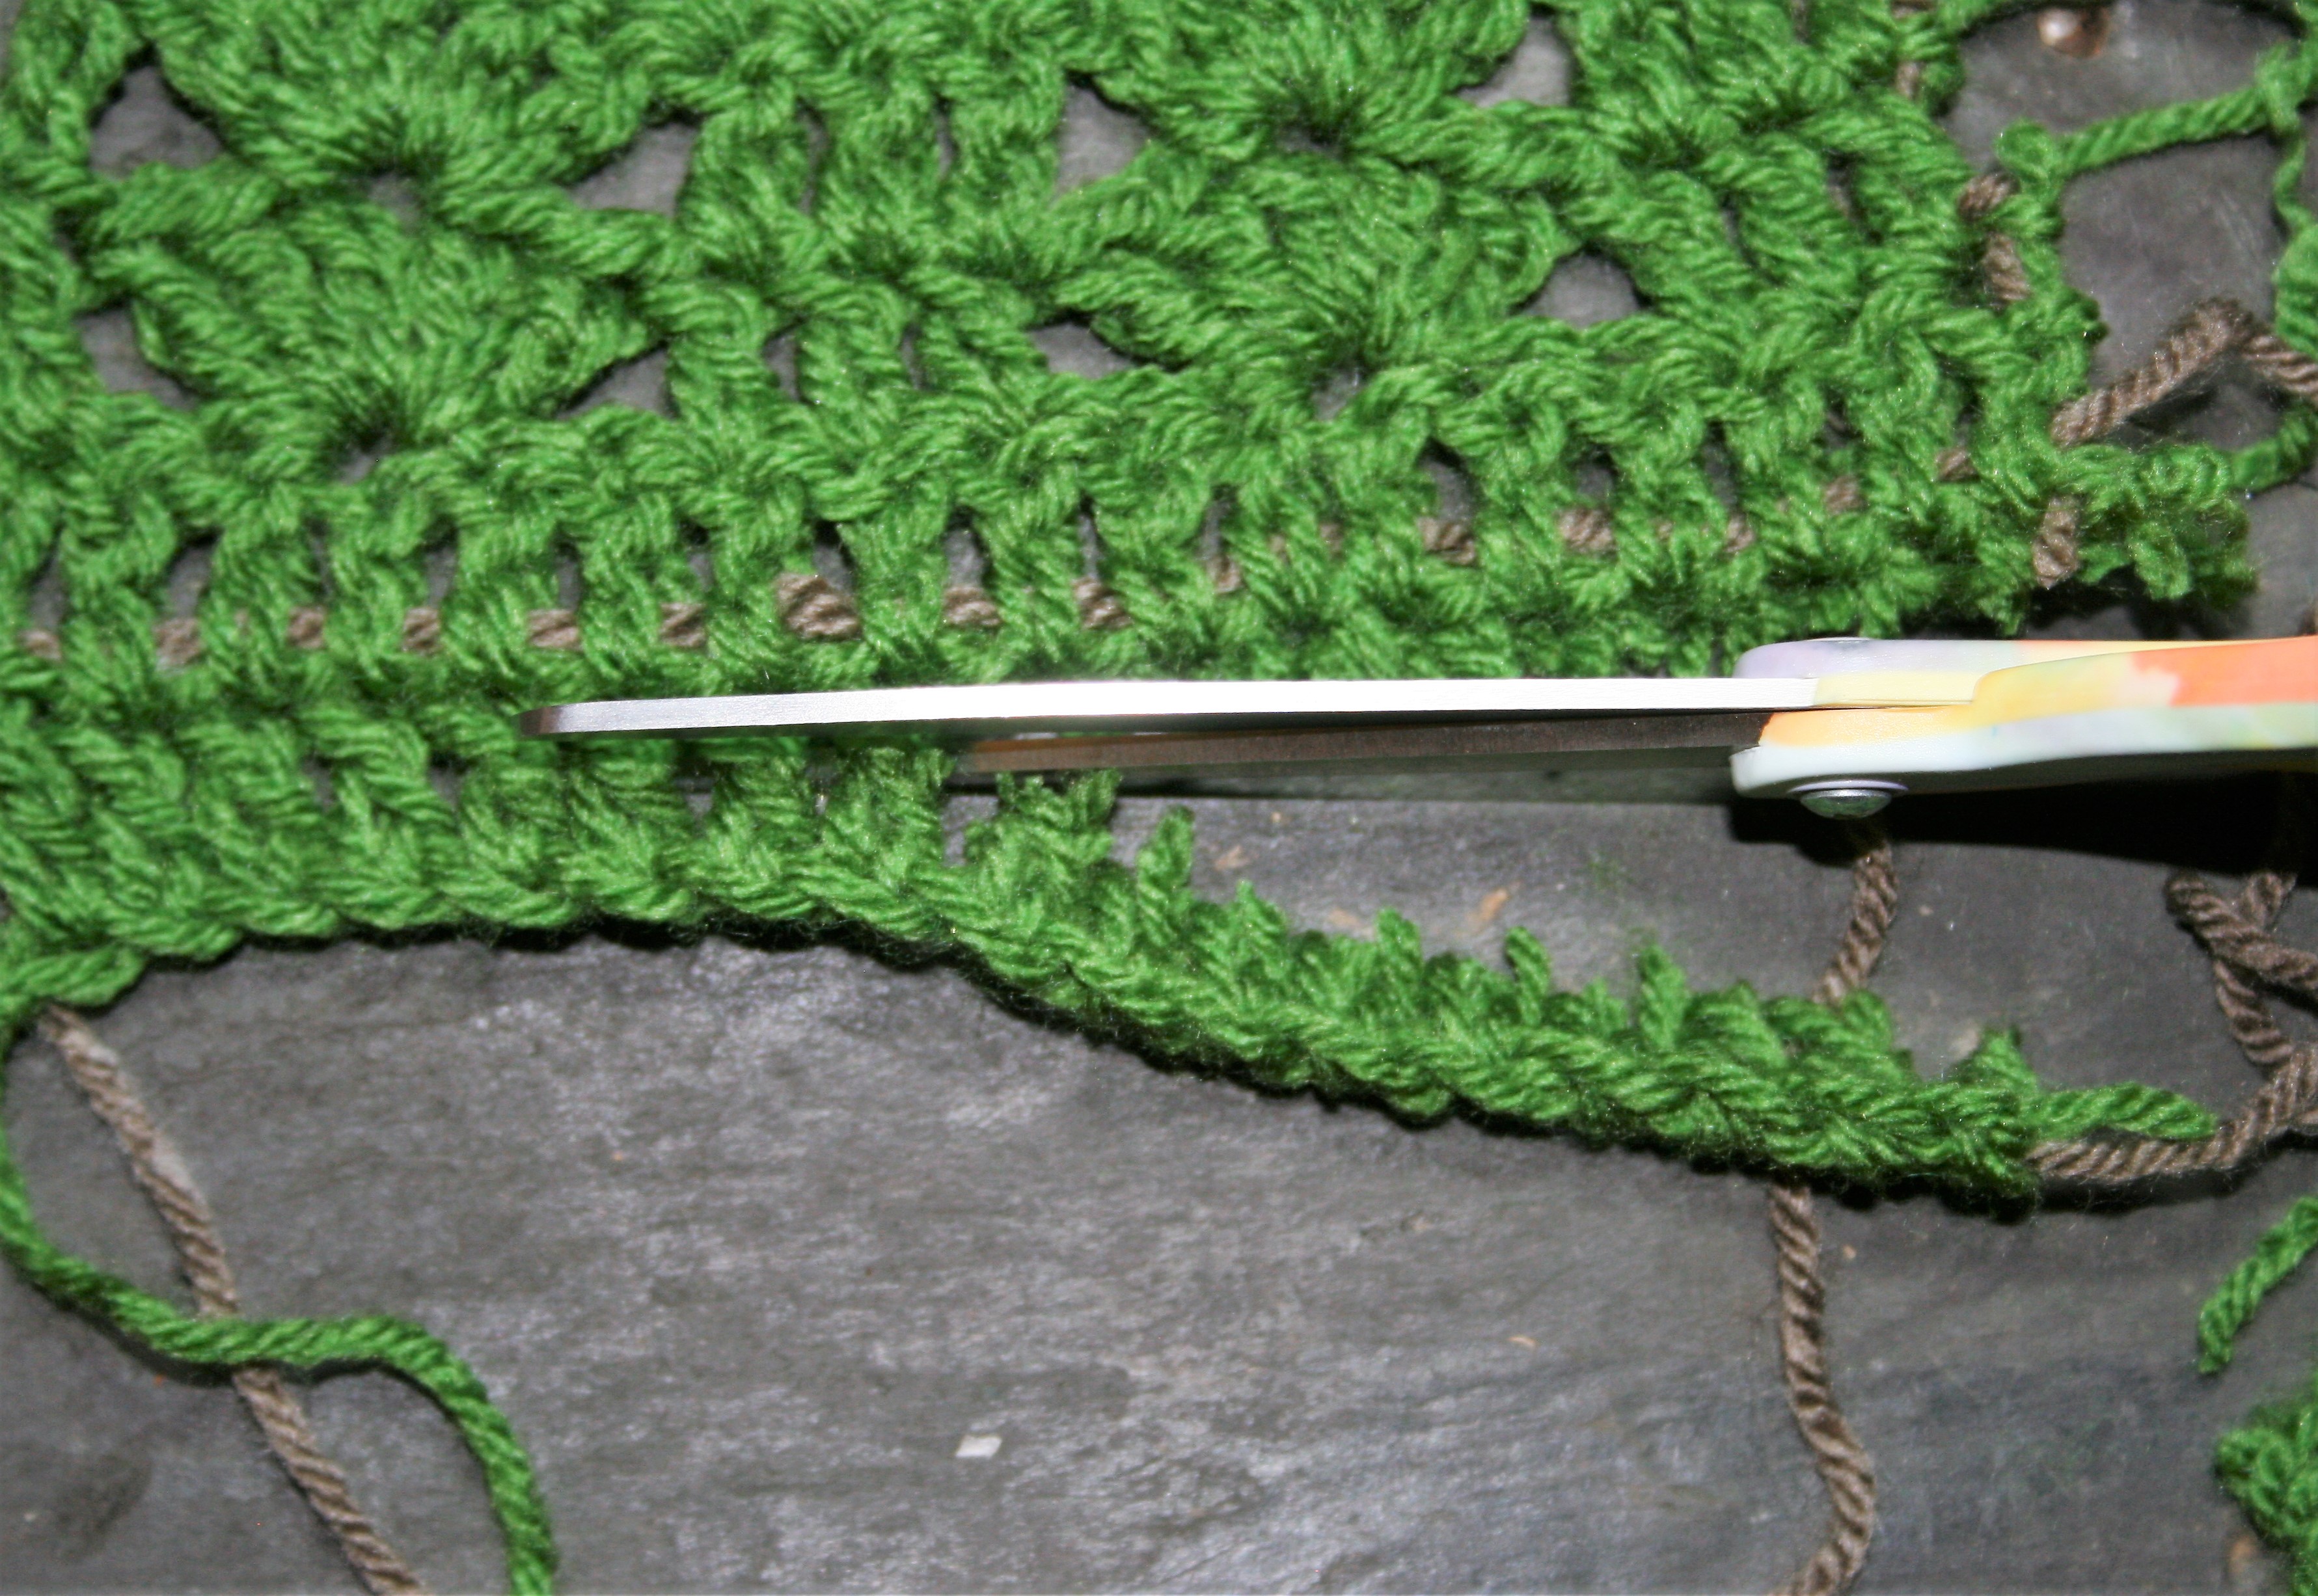 Cutting Crochet- It is Possible - Linda Dean CrochetLinda Dean Crochet